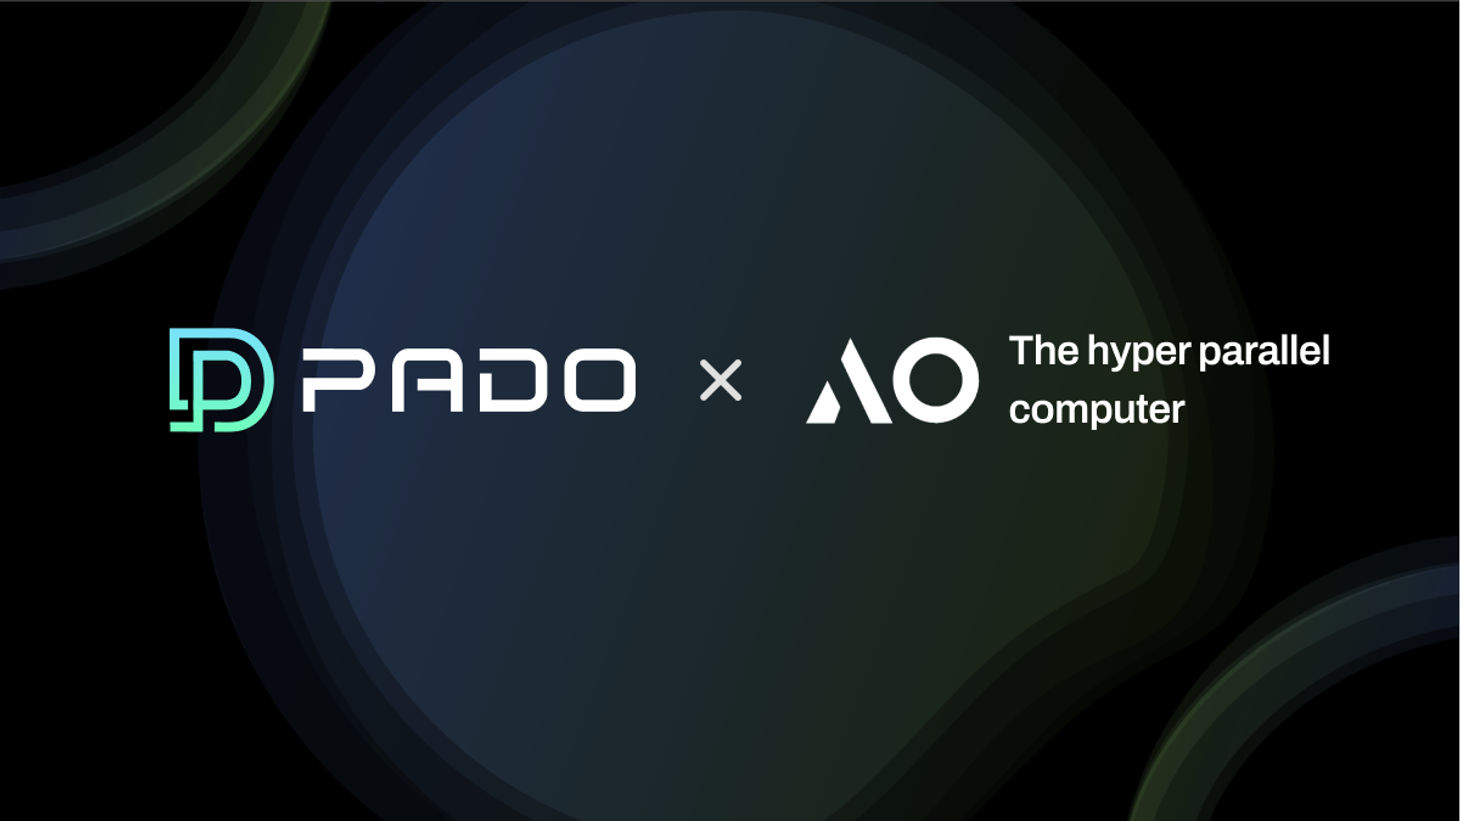 在 AO 超并行计算机上启用 PADO 可验证机密计算